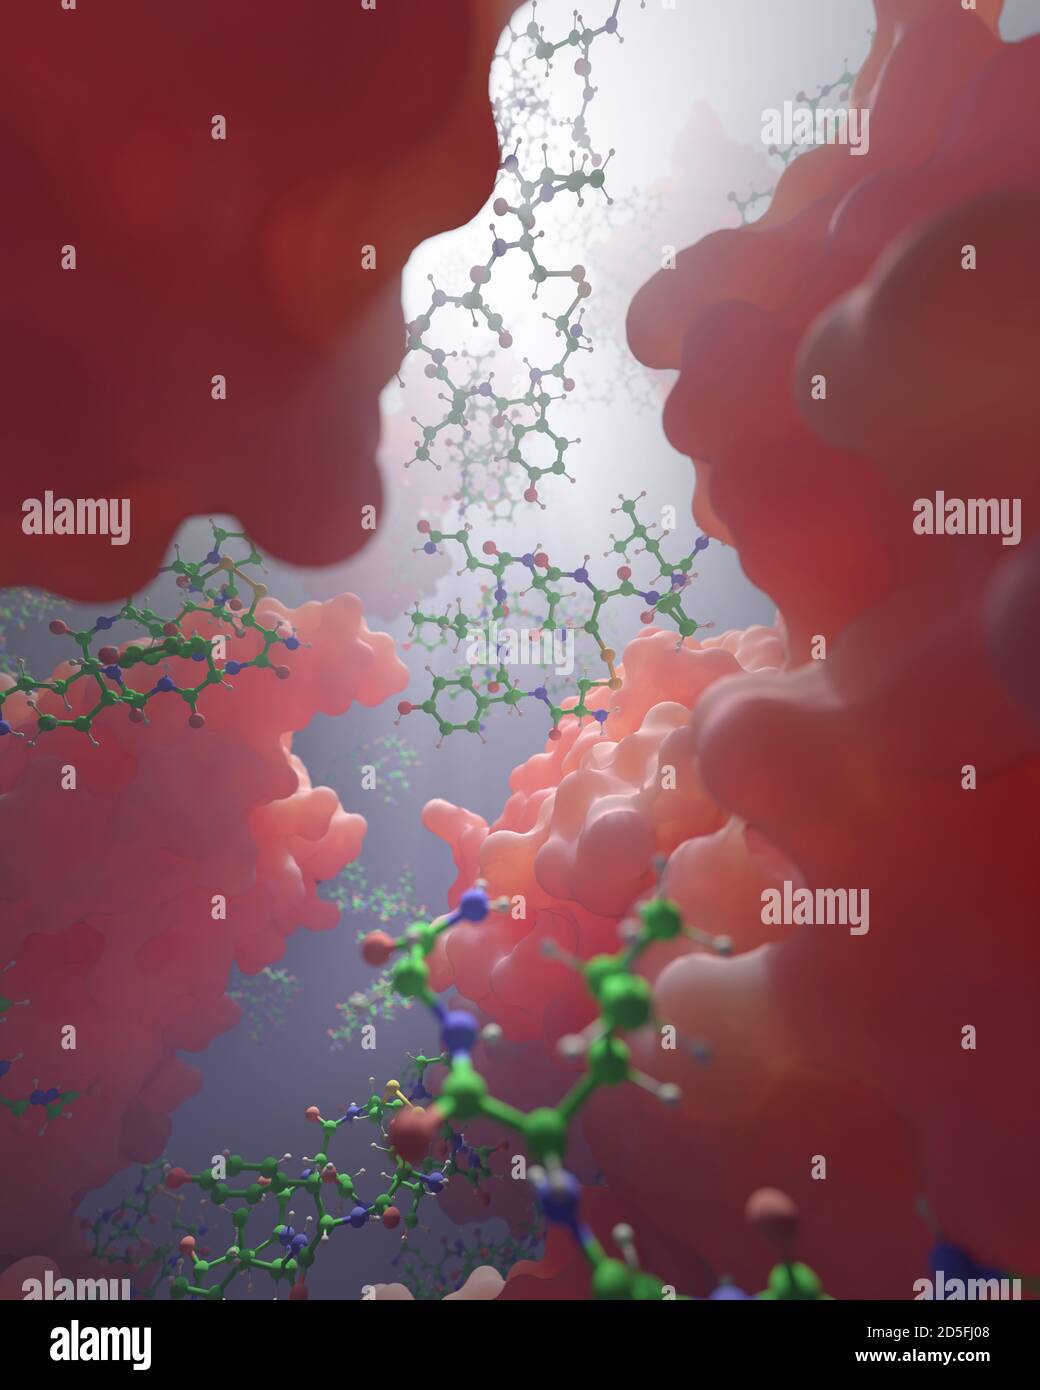 Una miscela di biomolecole (ball-and-stick) e proteine (macromolecole). Ci sono migliaia di molecole diverse coinvolte nella biochimica della vita. Foto Stock